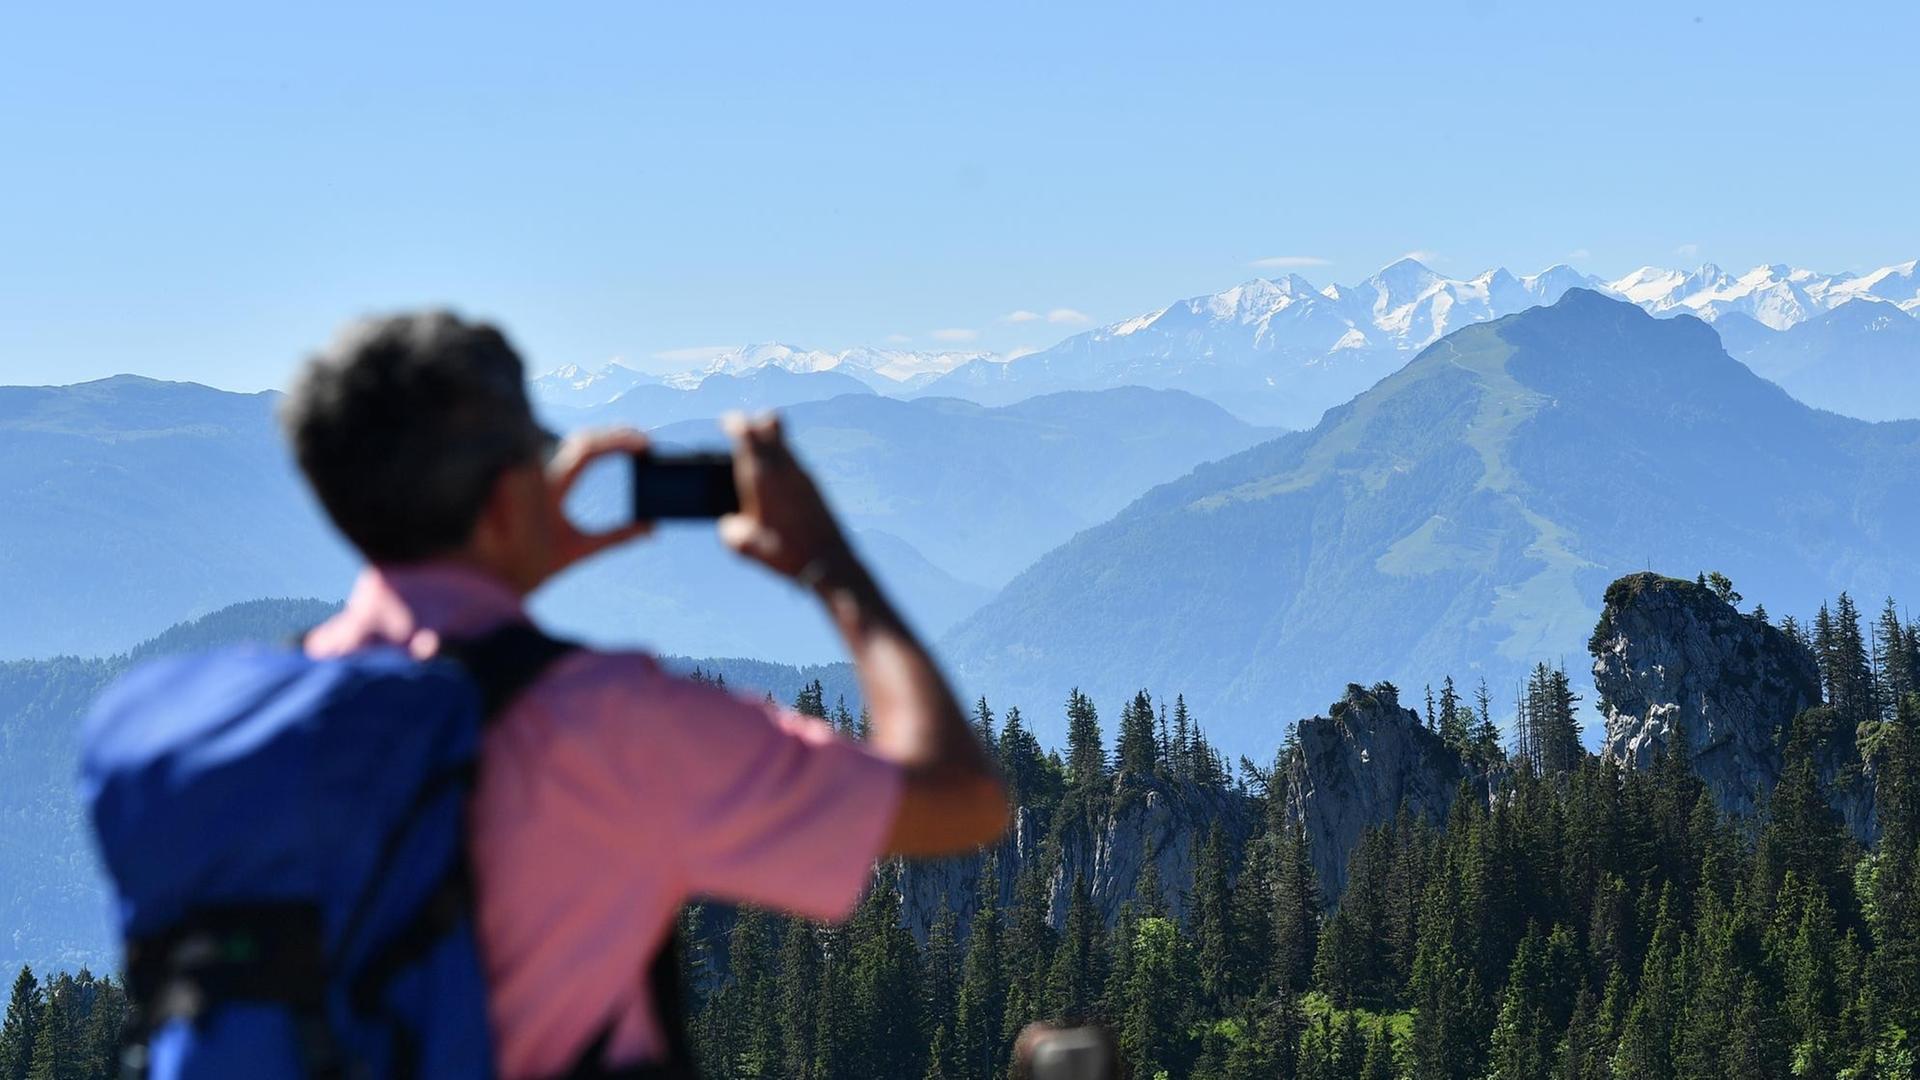 Ein Wanderer fotografiert Berge in den bayerischen Alpen